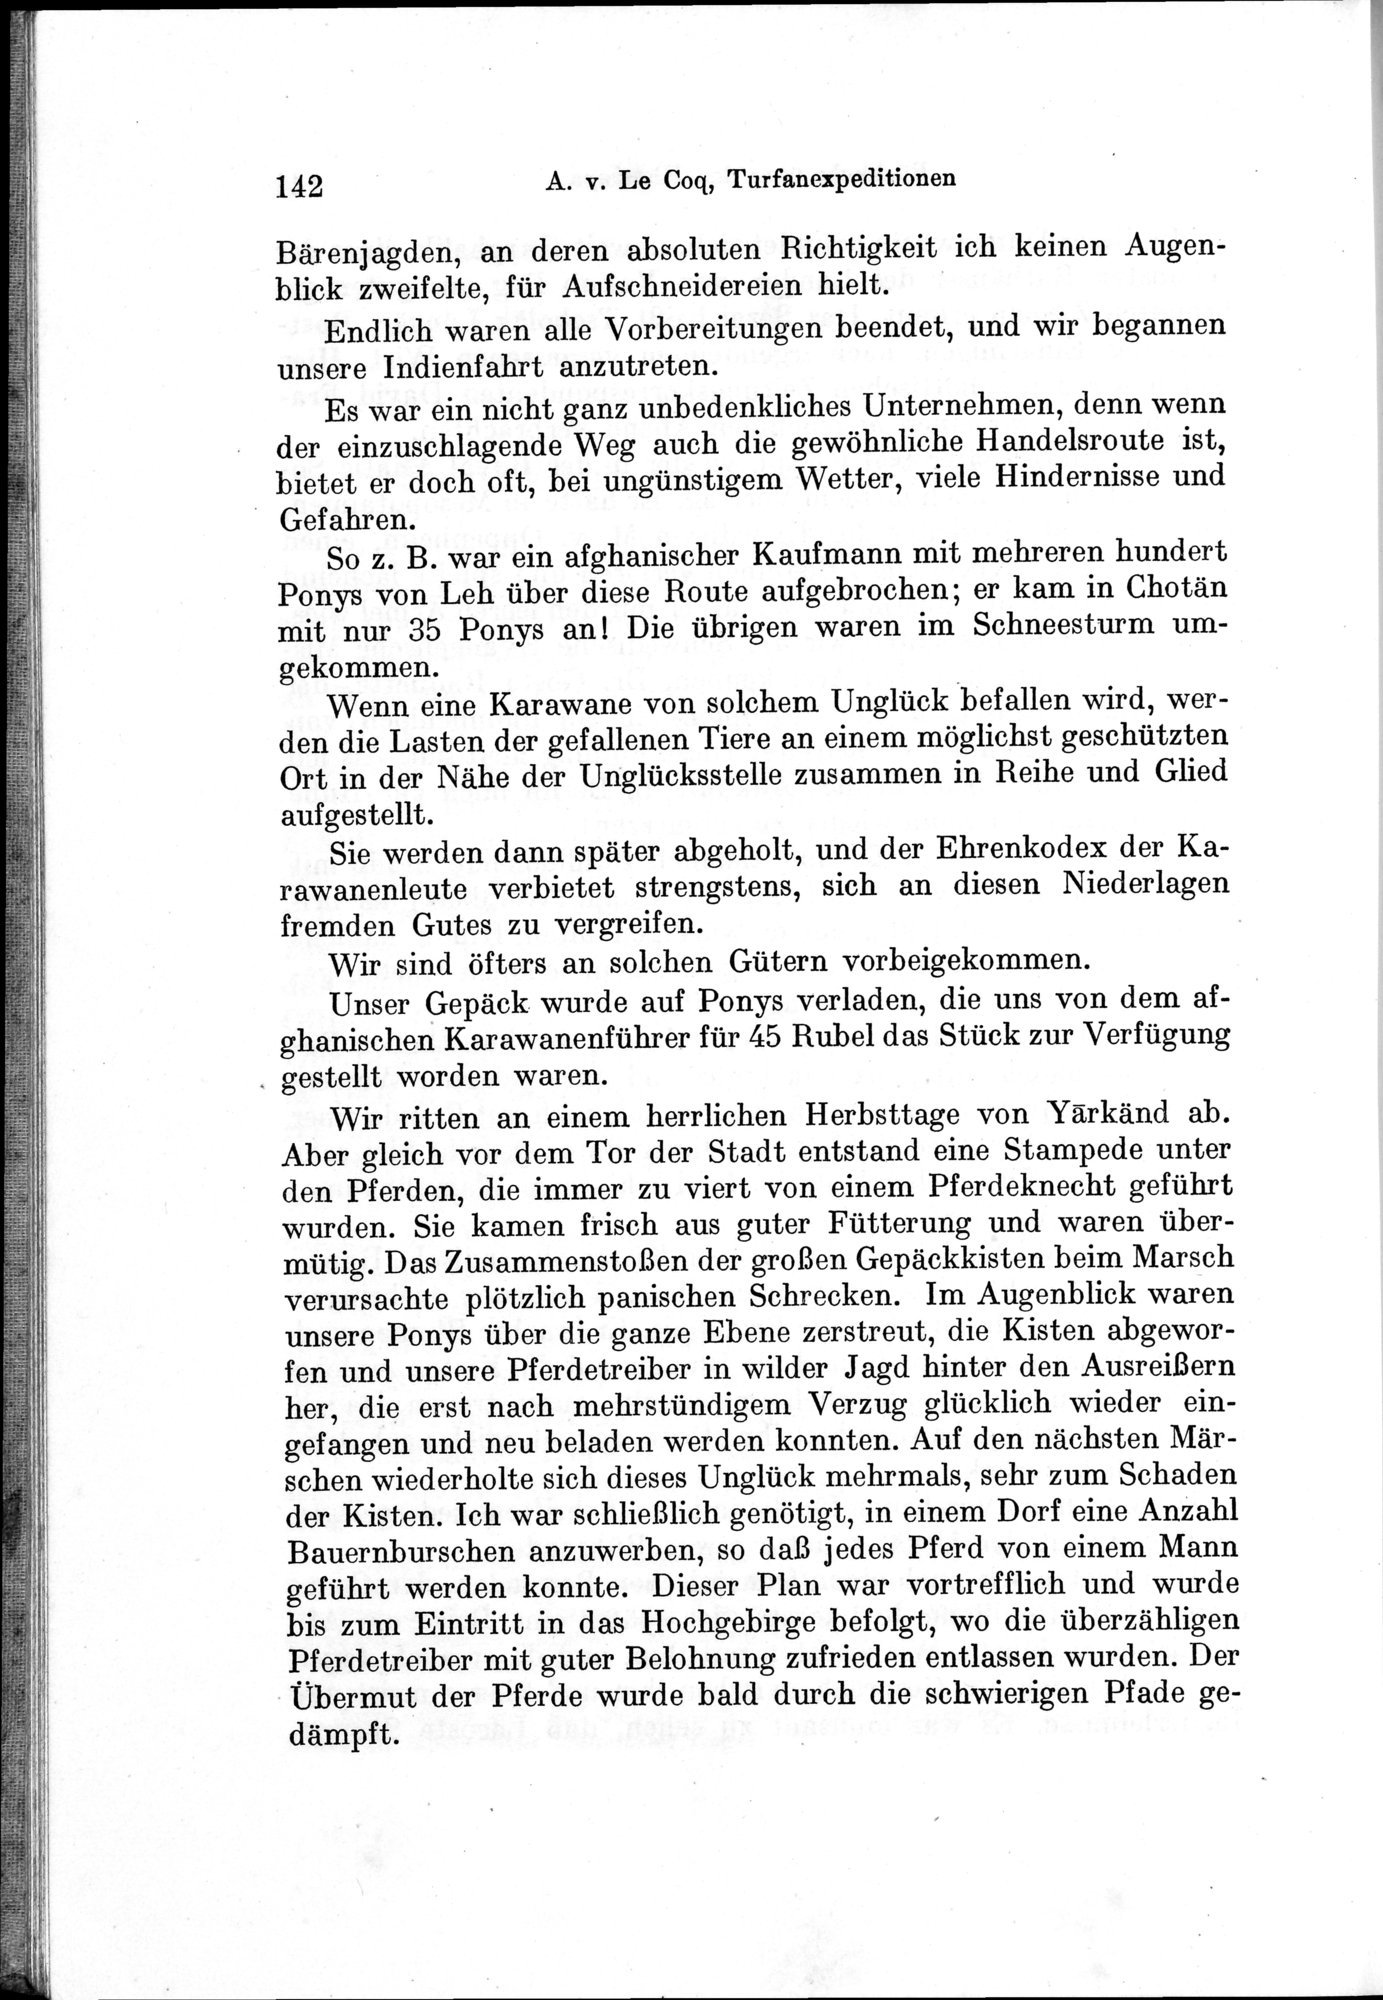 Auf Hellas Spuren in Ostturkistan : vol.1 / Page 204 (Grayscale High Resolution Image)